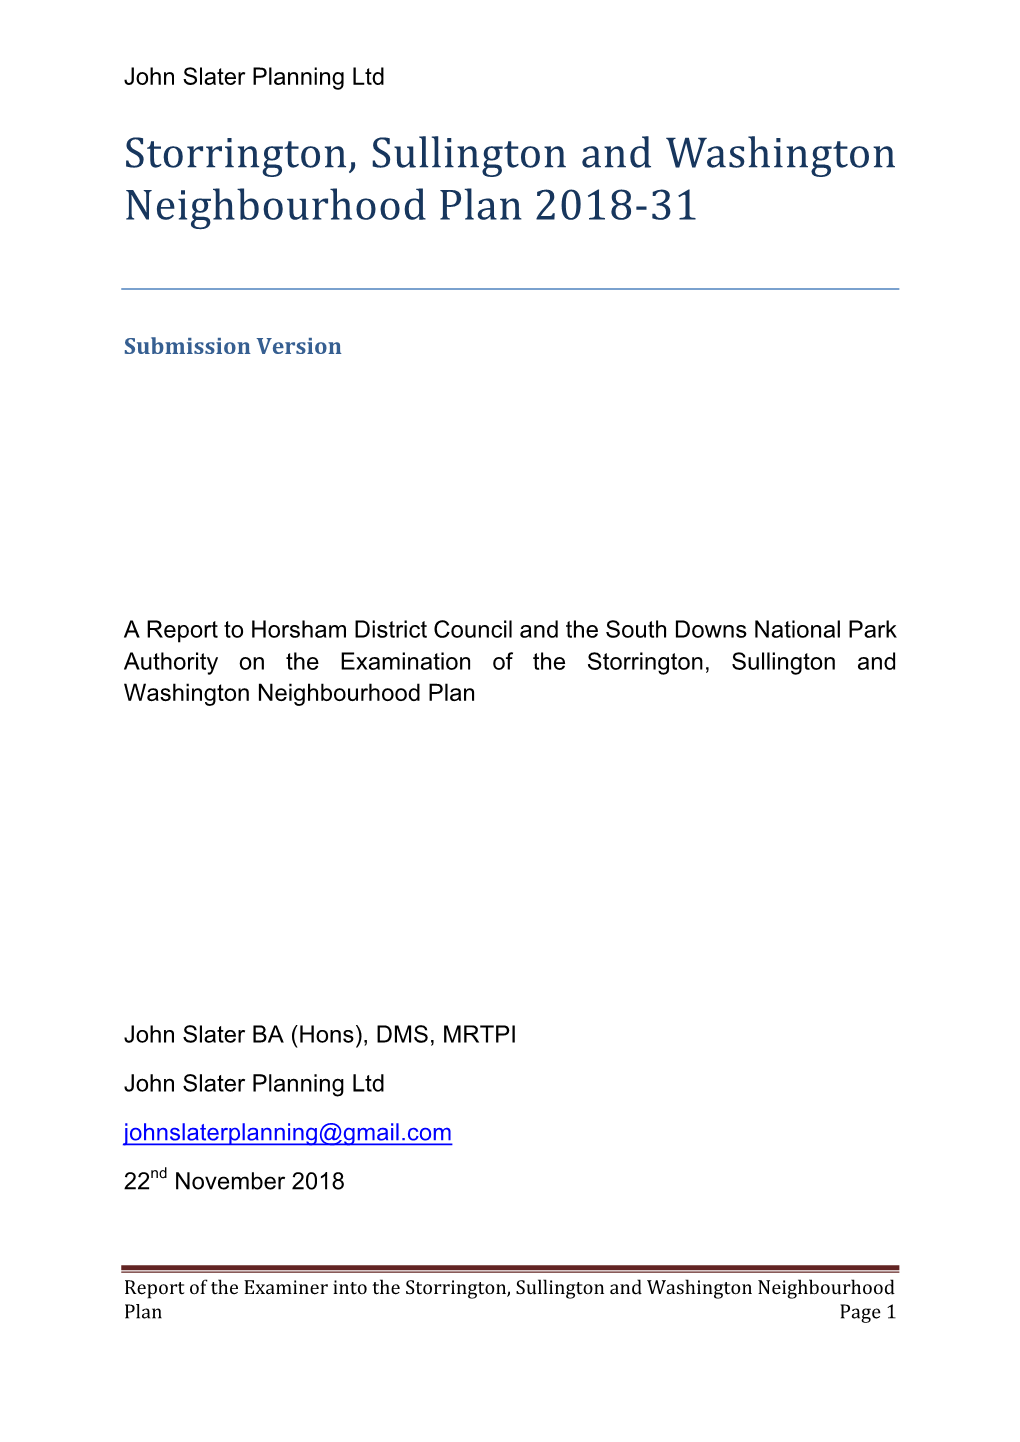 Storrington, Sullington and Washington Neighbourhood Plan 2018-31